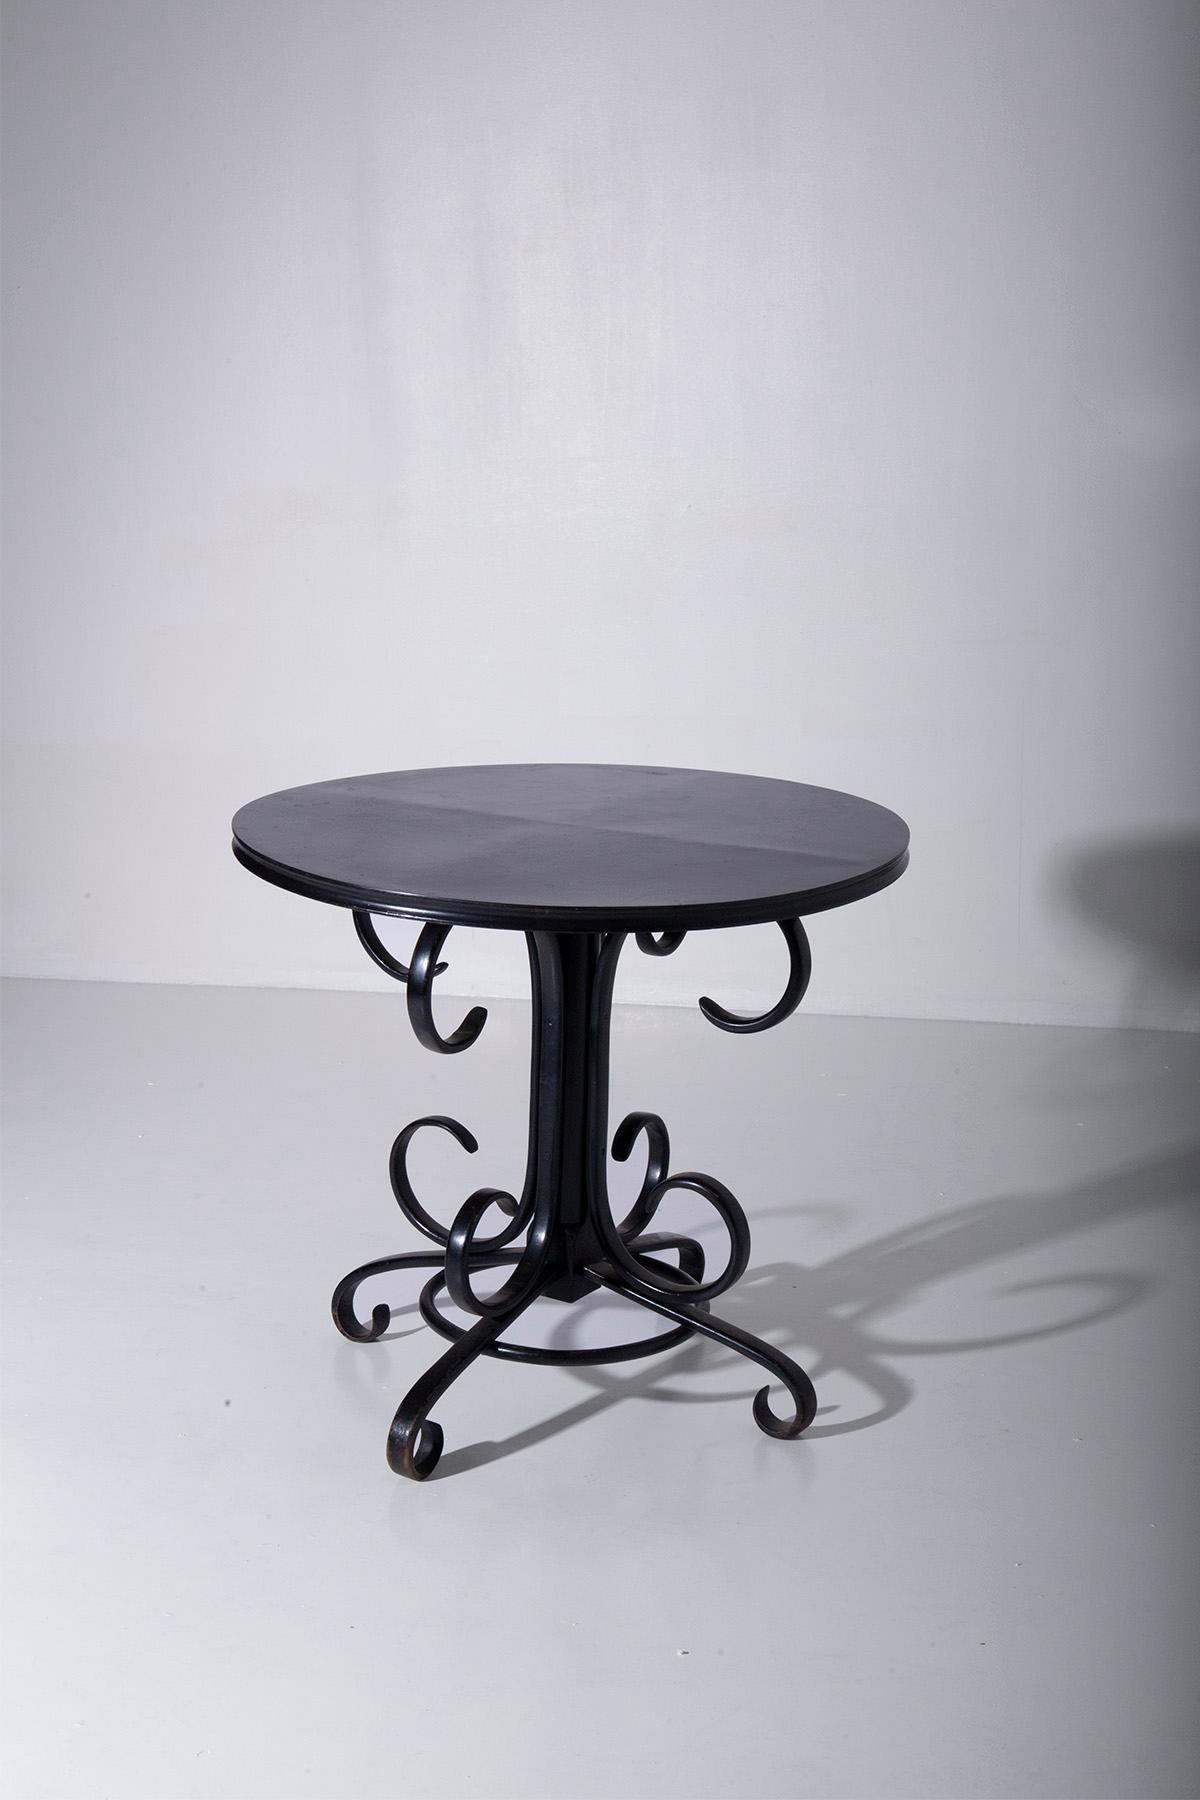 Imaginez une table centrale haute et élégante du début des années 1900, véritable témoignage de l'opulence et de la sophistication de l'époque Art déco. Cette pièce exquise est une œuvre de glamour en soi, fabriquée en bois laqué noir lustré.

Ce